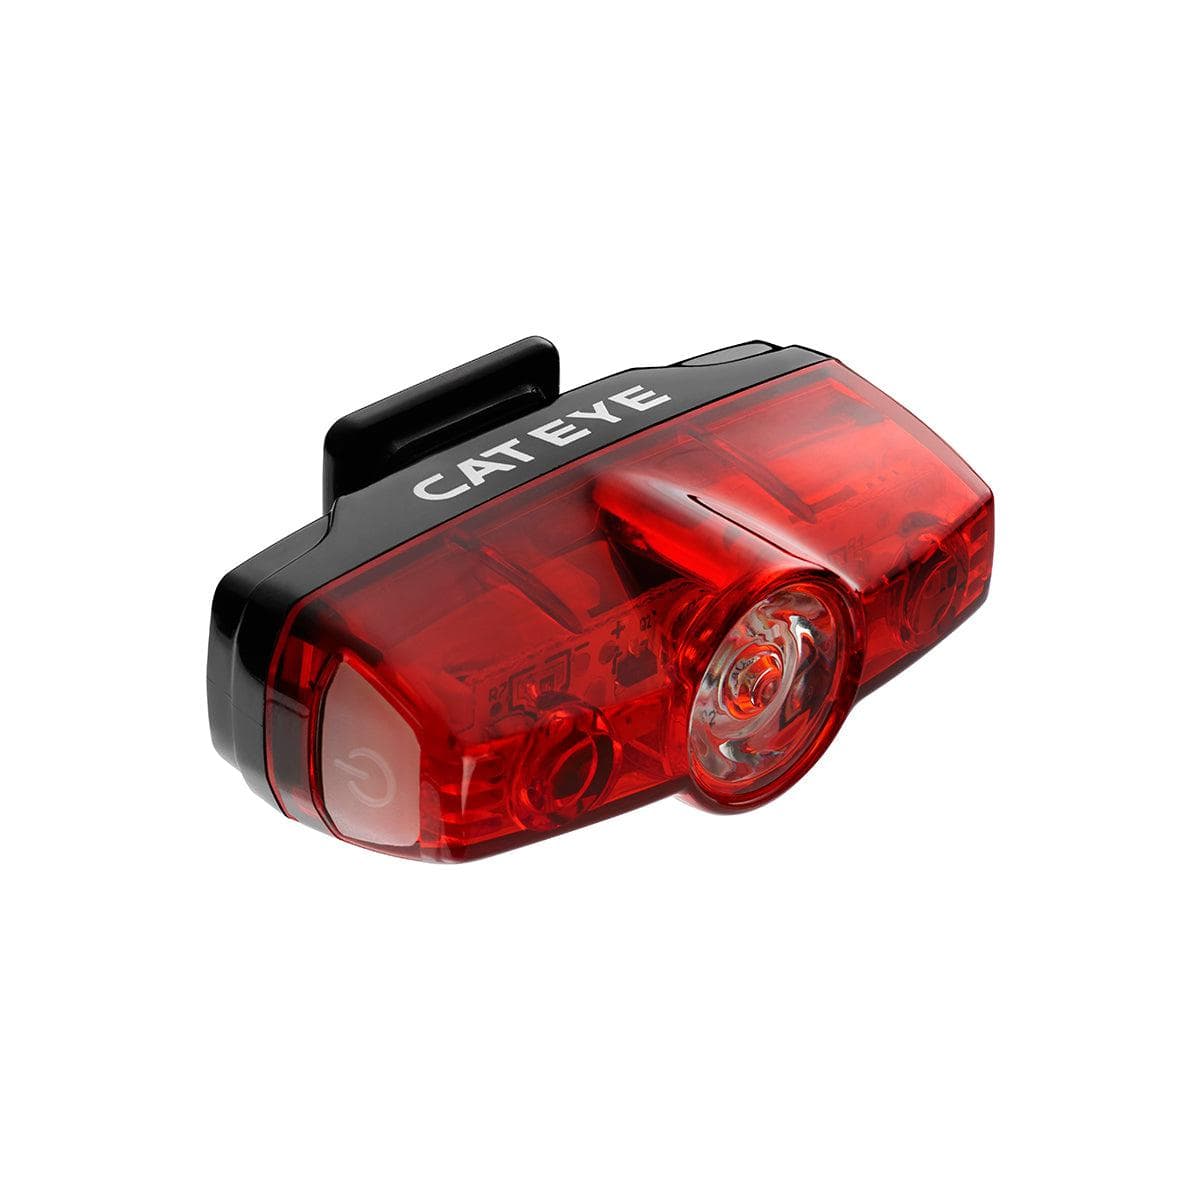 Cateye Rapid Mini Usb Rechargeable Rear Light (25 Lumen):